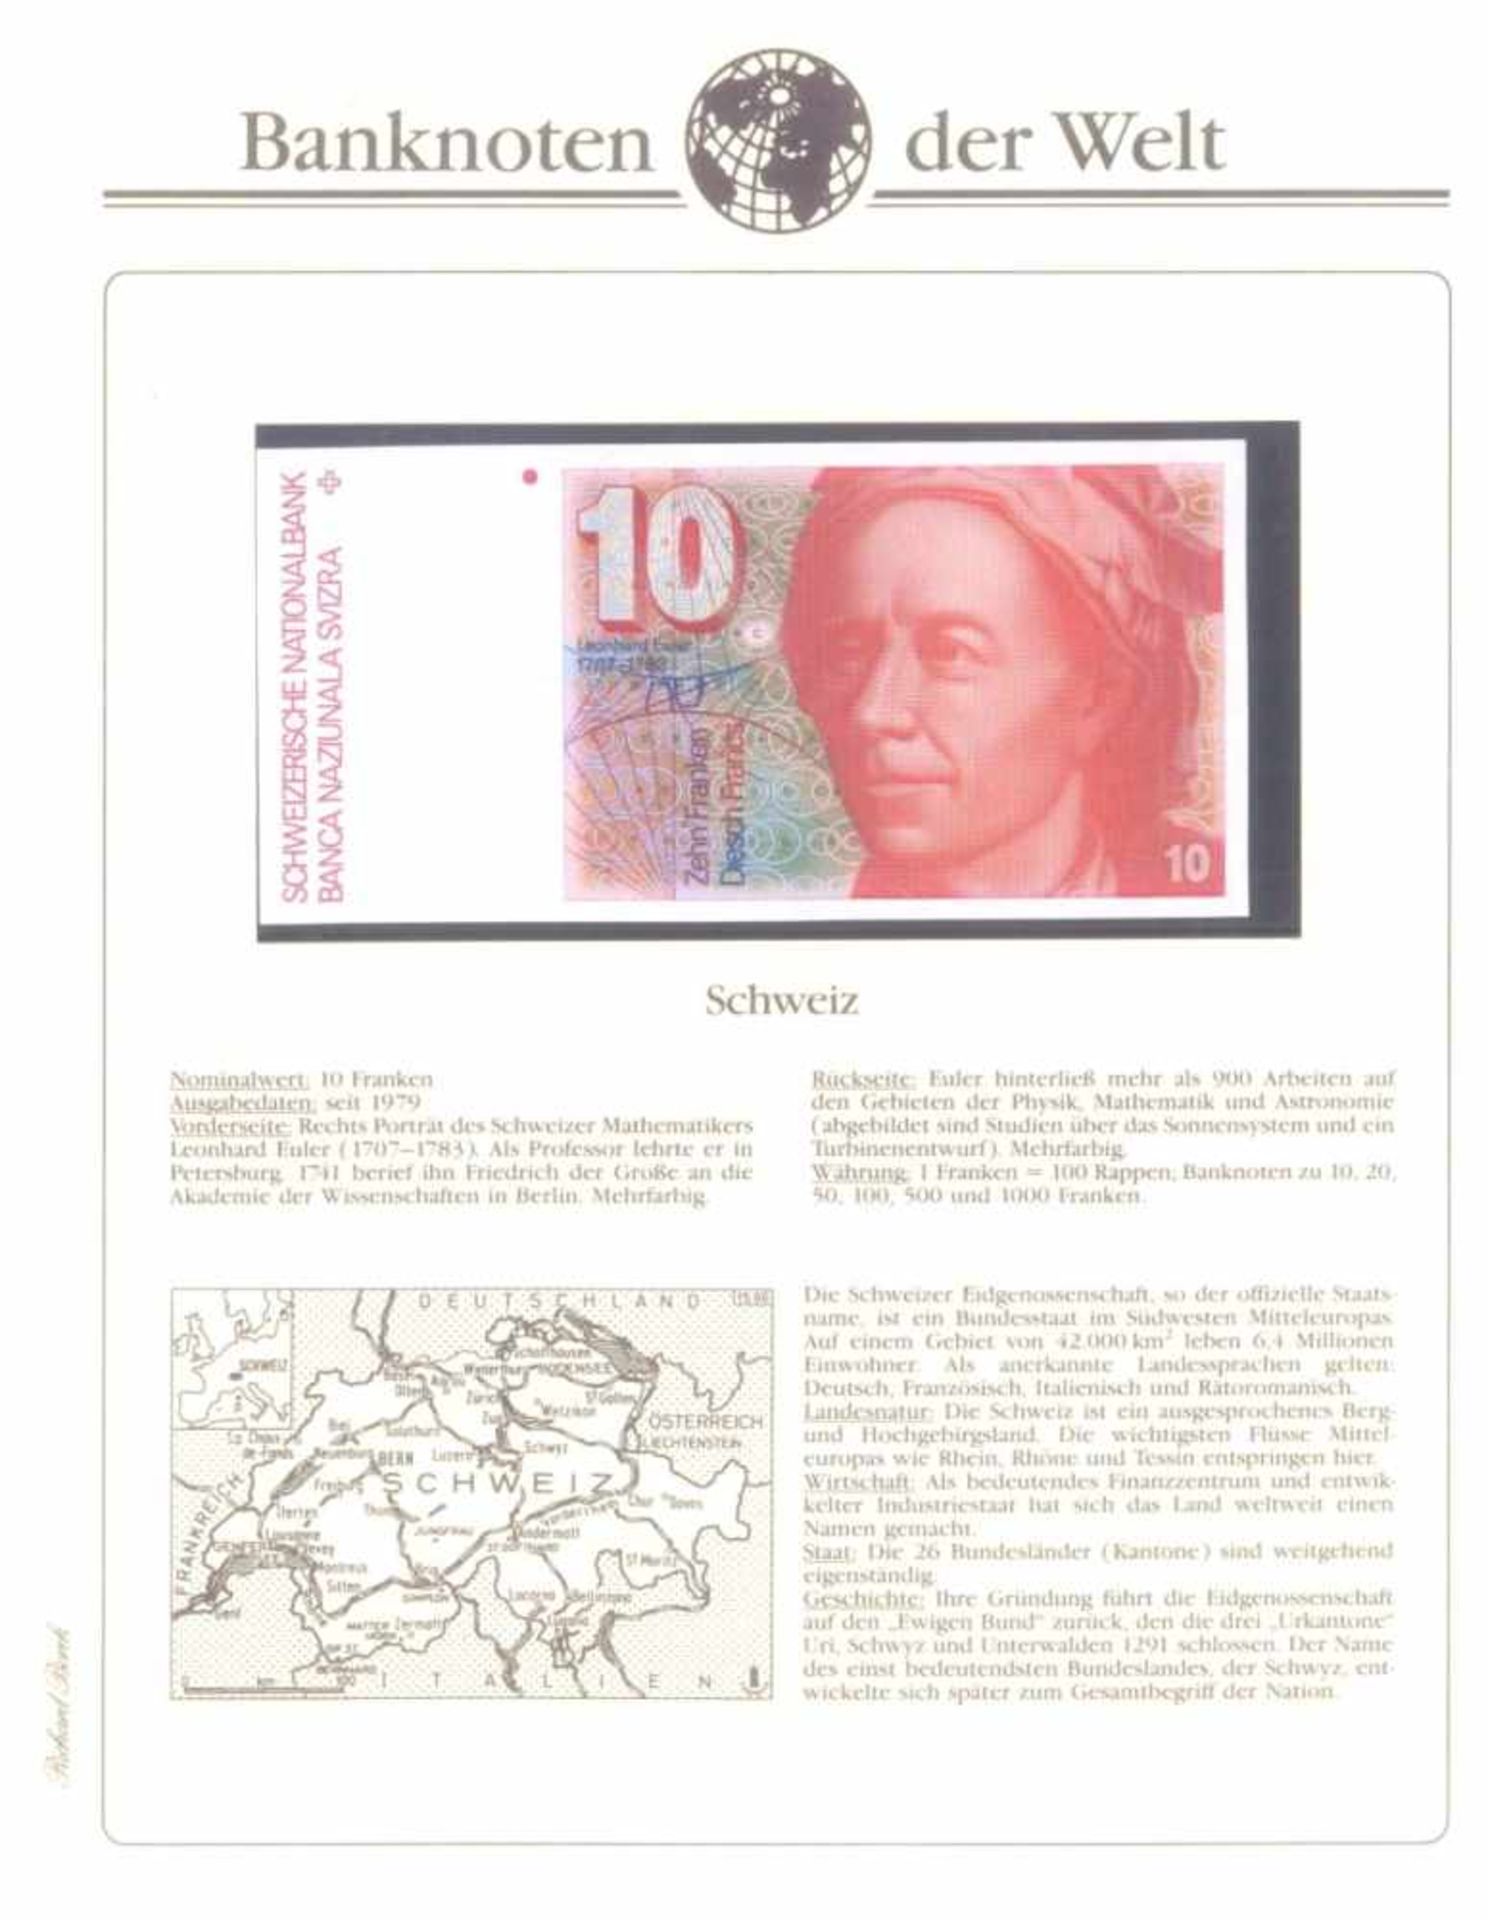 Banknoten der WeltBorek-Abo-Bezug. 2 Alben, prall gefüllt mit weit über100 Geldscheinen nebst - Bild 4 aus 4